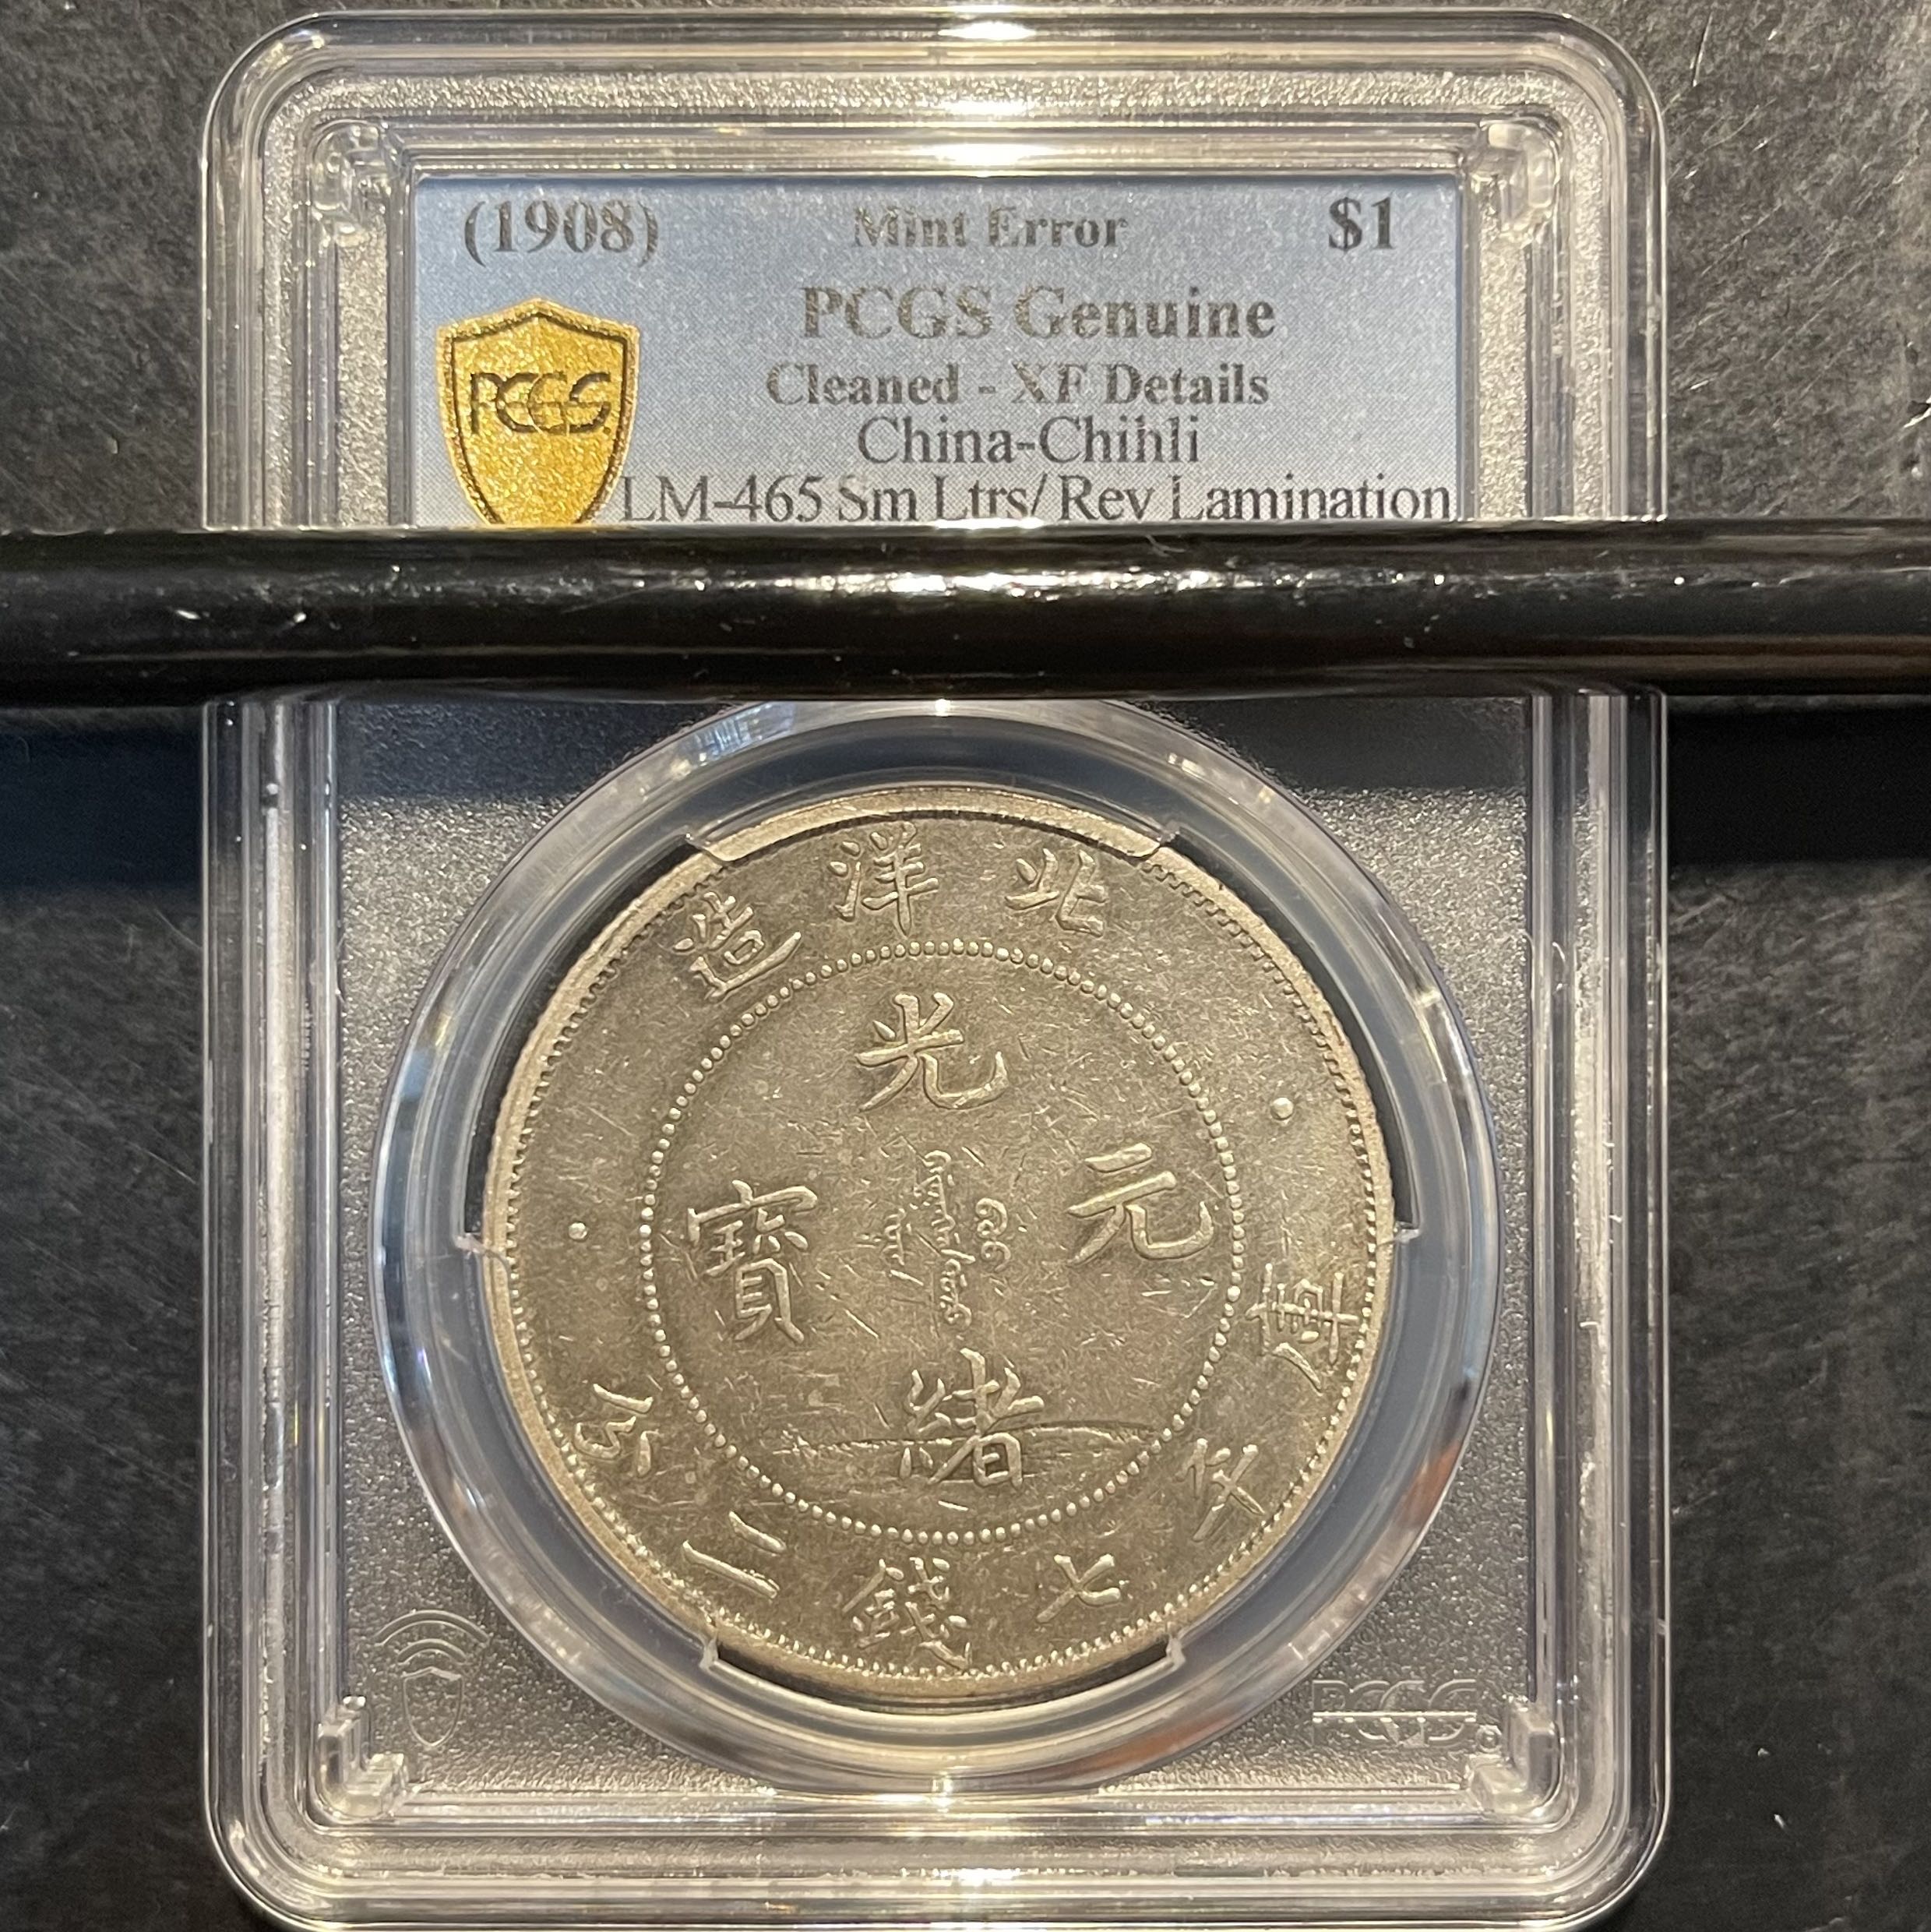 稀有错版小字版北洋龙34年背叠层脱皮错体币. Rare Mint Error 1908